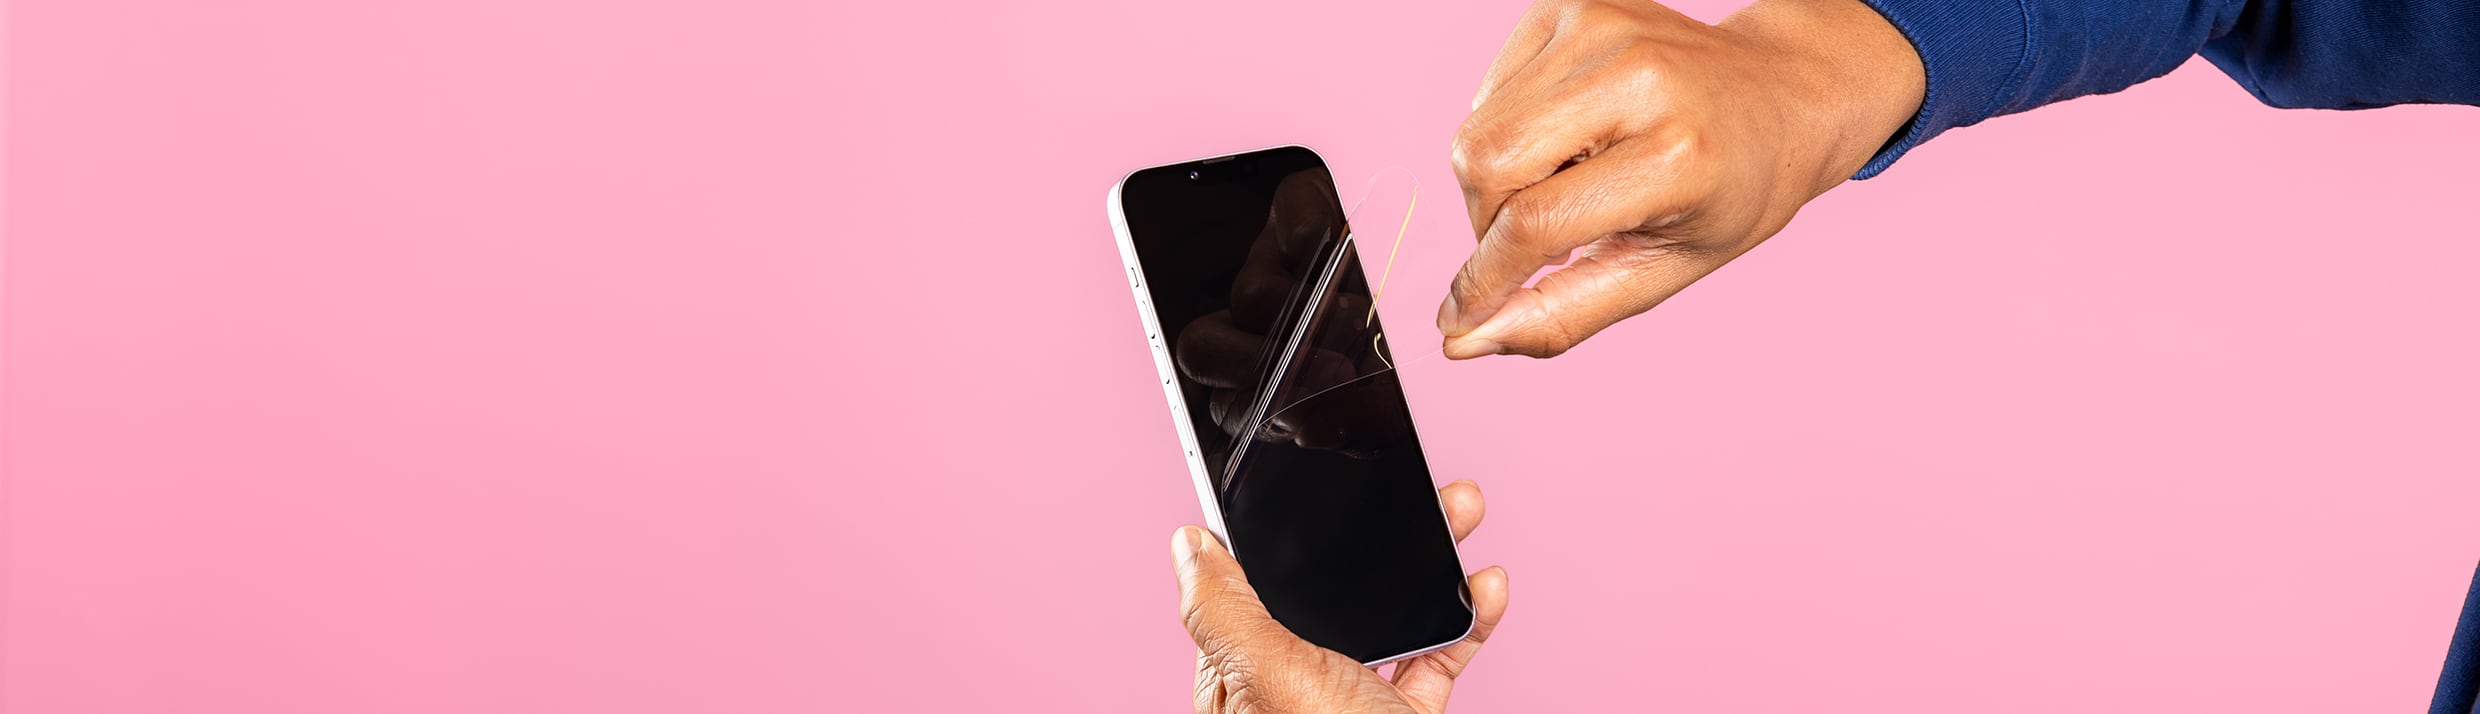 Zwei Hände entfernen eine Folien-Schutzfolie von einem iPhone, der Hintergrund ist rosa.